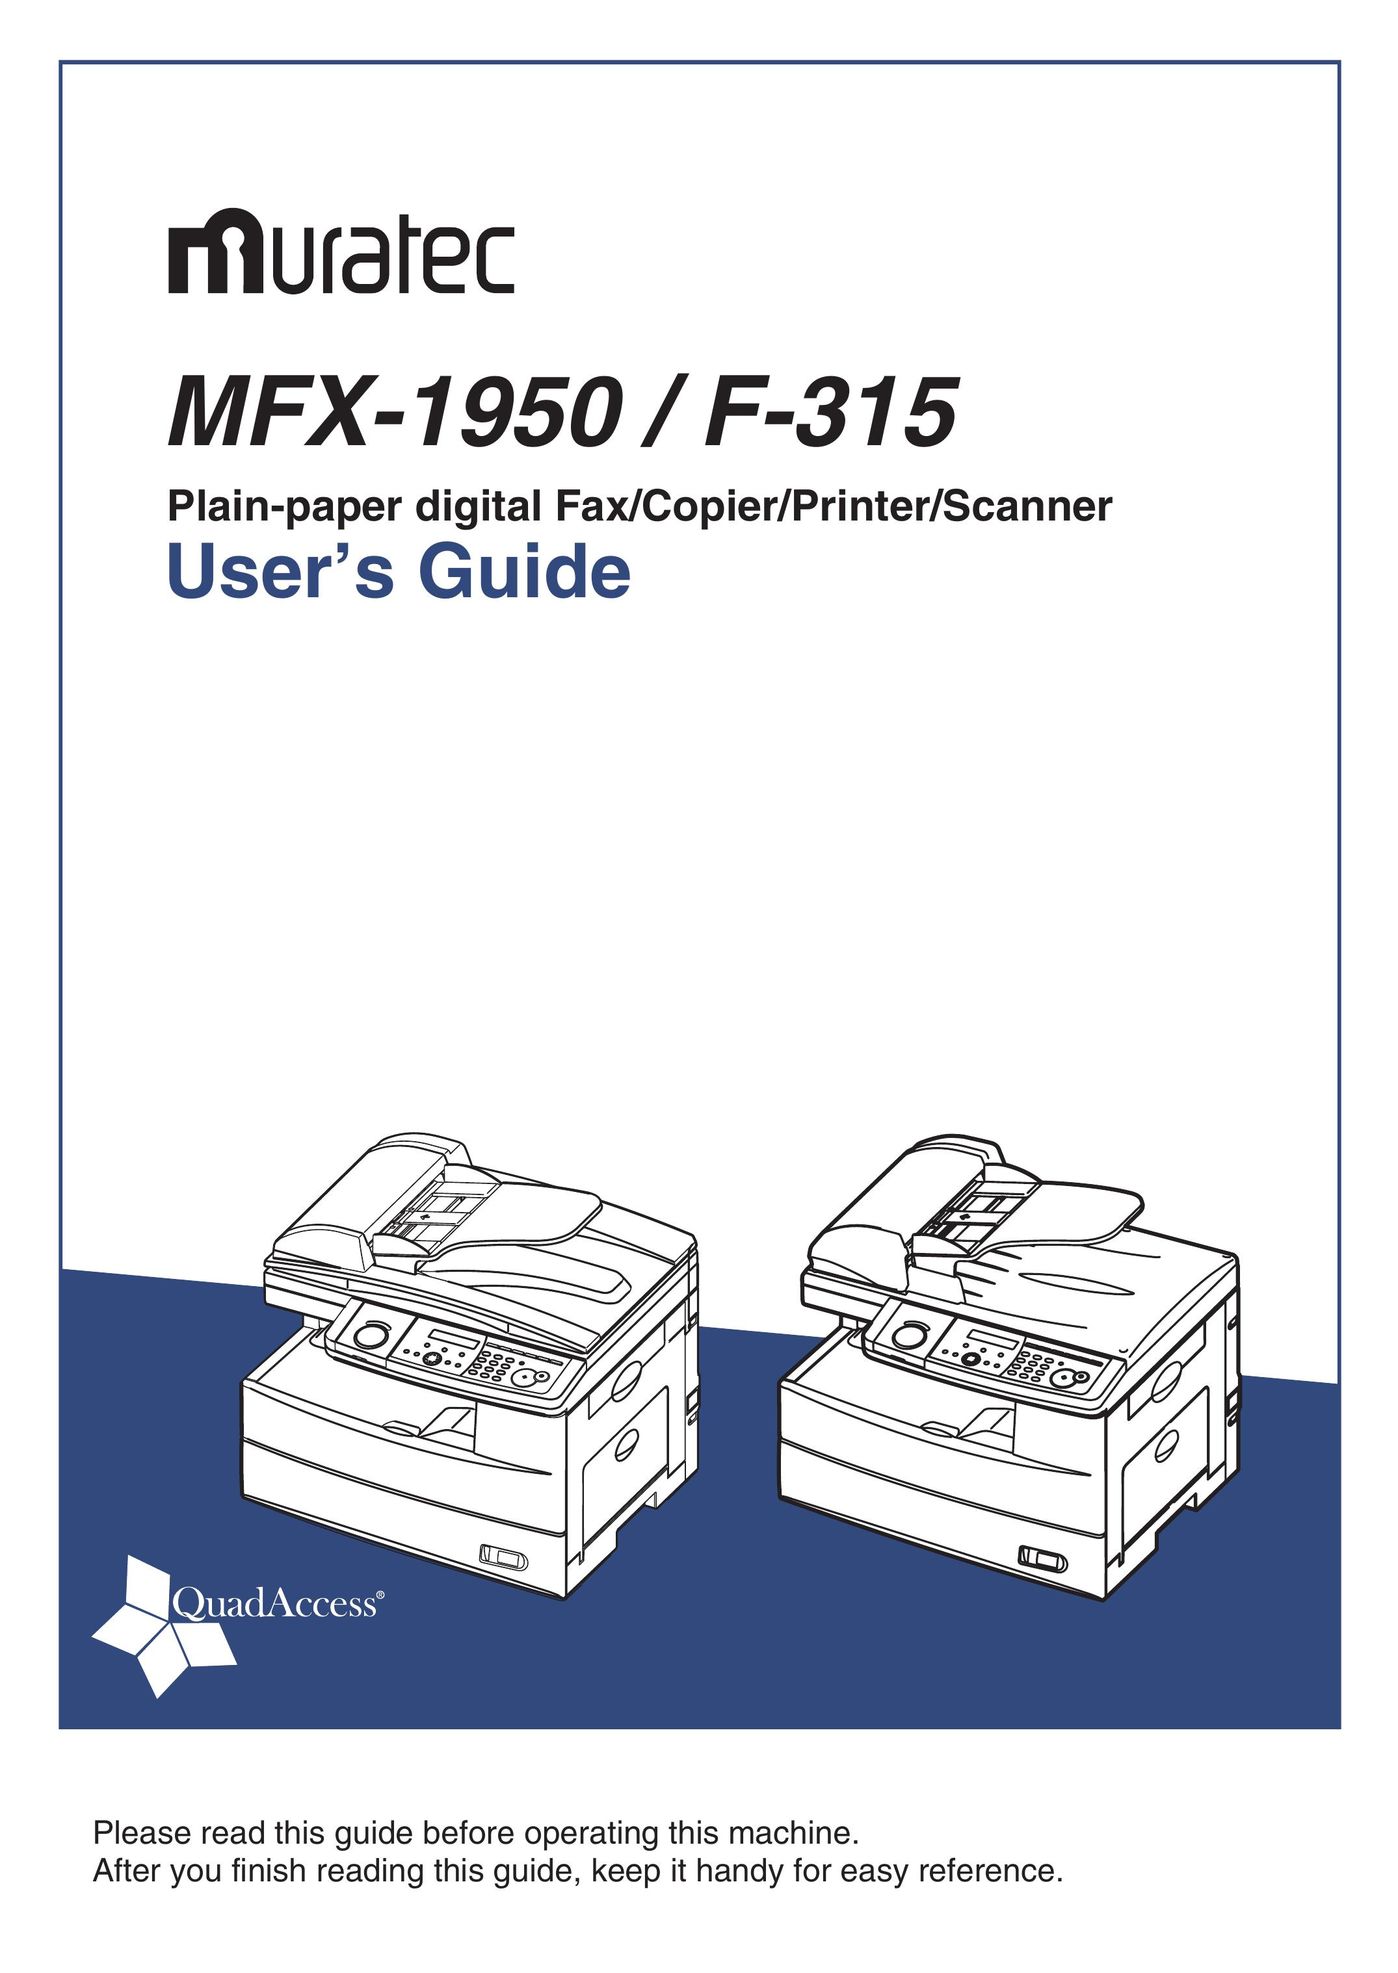 Muratec F-315 All in One Printer User Manual